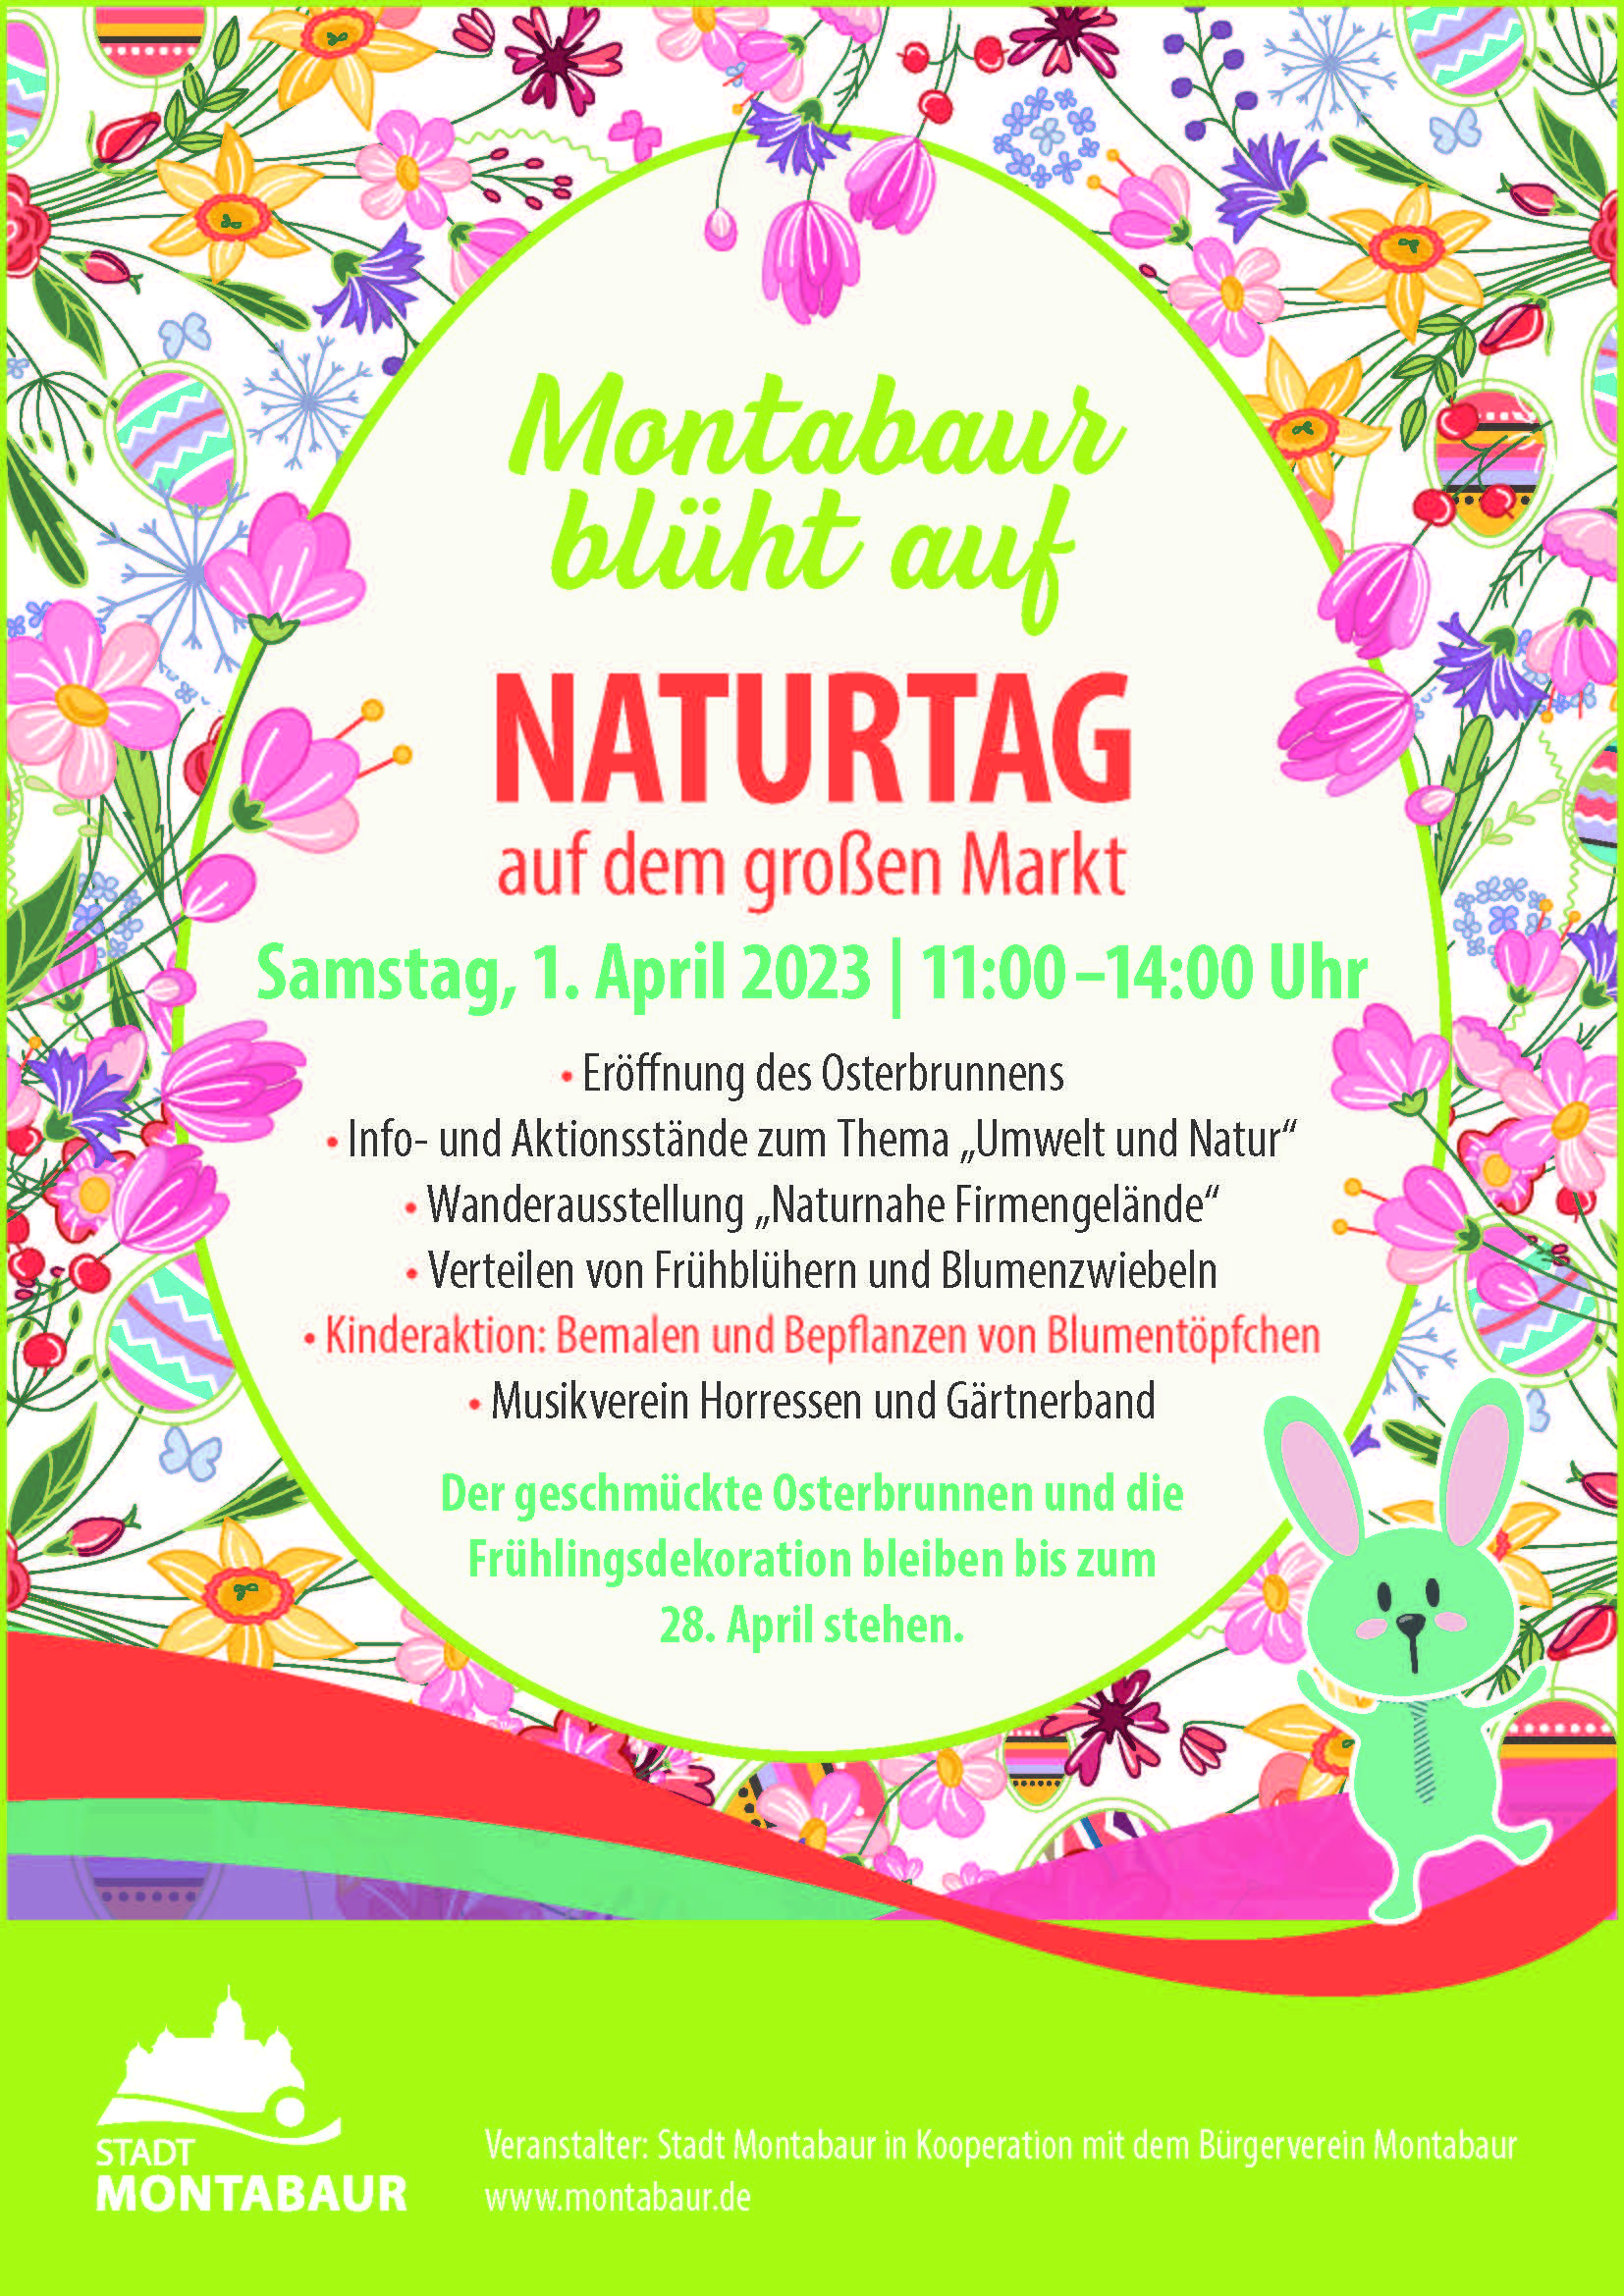 Naturtag und Eröffnung des Osterbrunnens am 01. April 2023 am Großen Markt, Montabaur